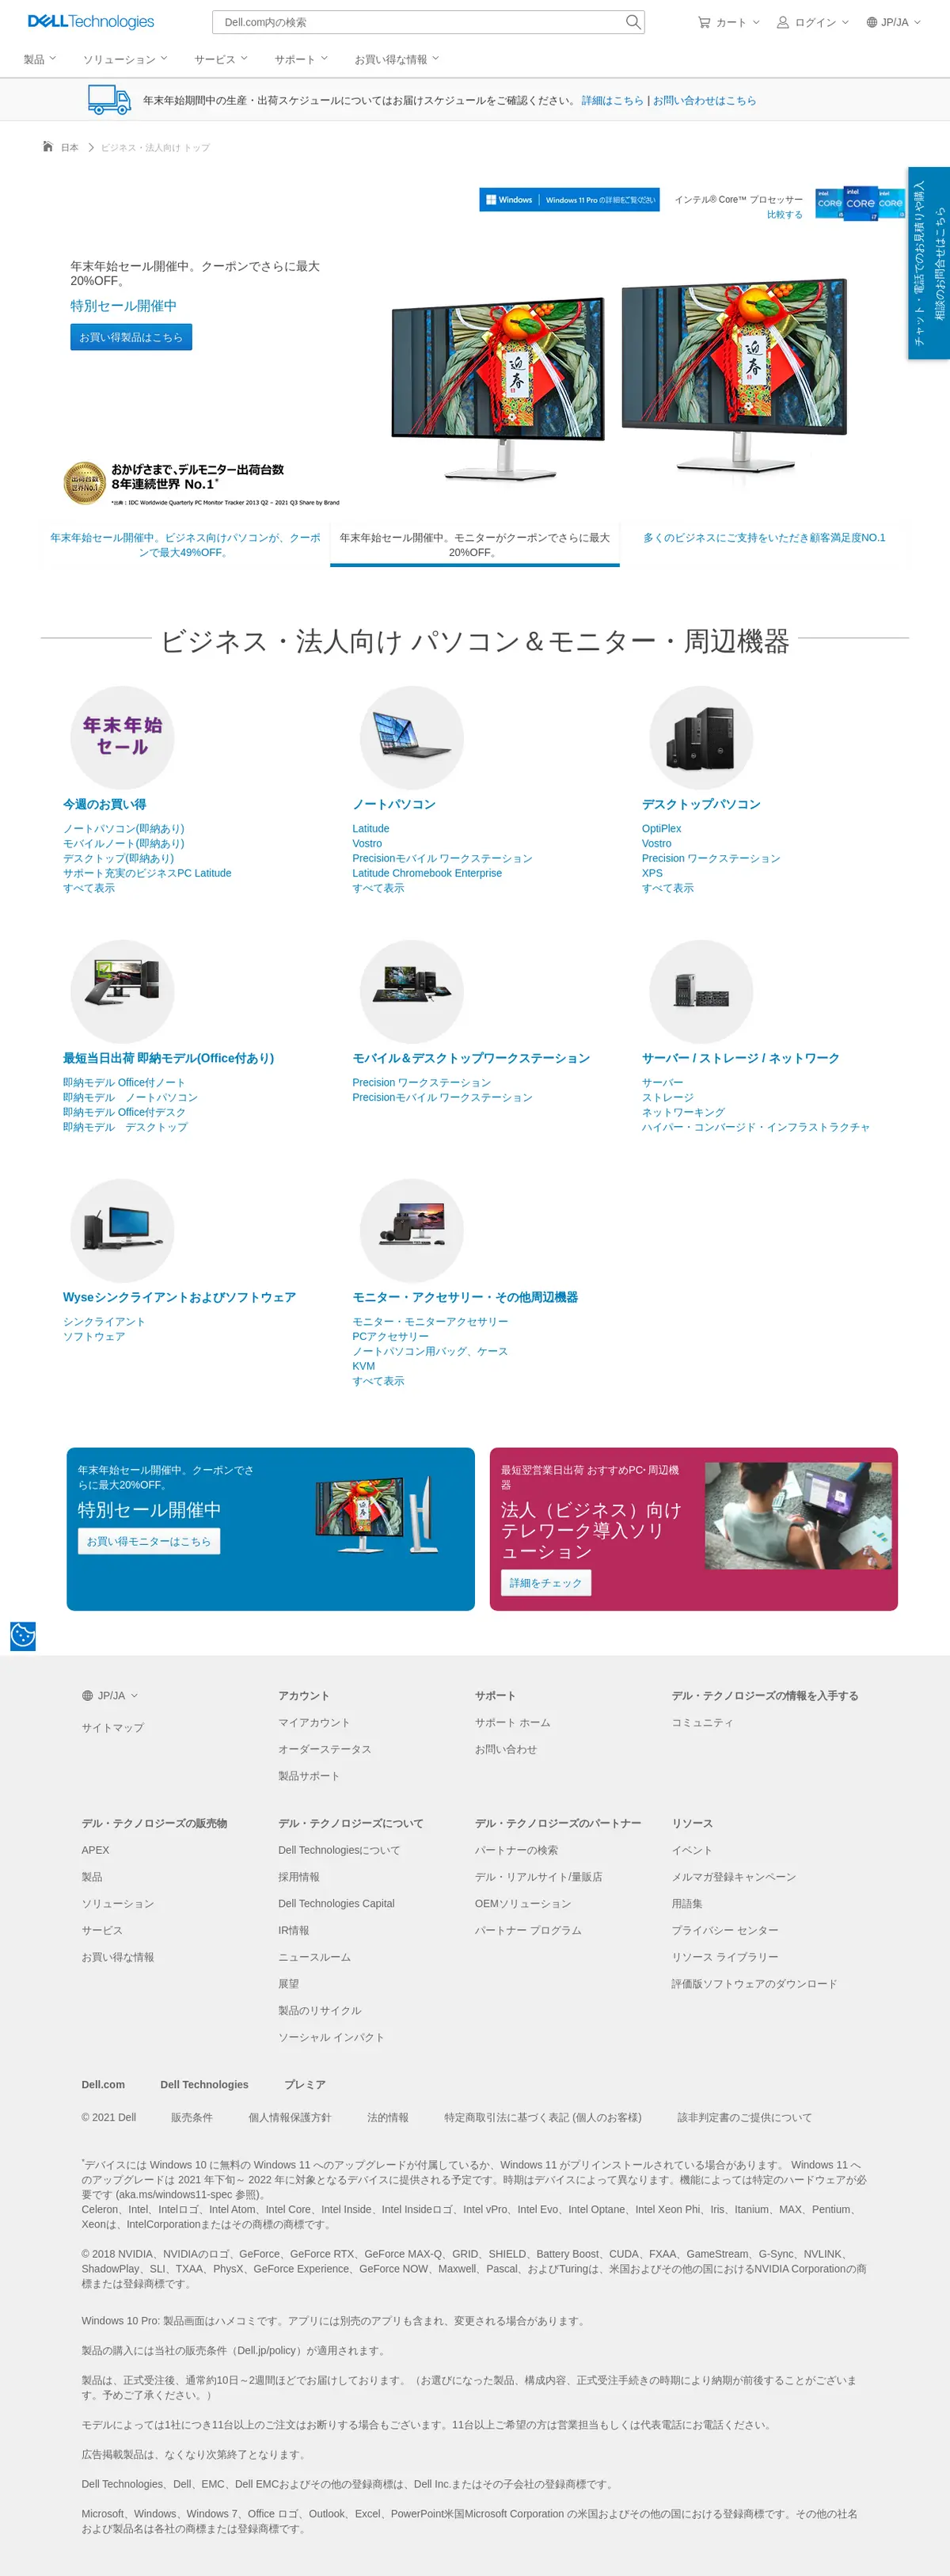 キャプチャ画面 会社名:デル株式会社プロジェクト名:DELL JAPAN(法人向け) 画面名:ブランドトップ デバイス名:PCカテゴリ:EC・オンラインショップタグ:PC,ブランドトップ